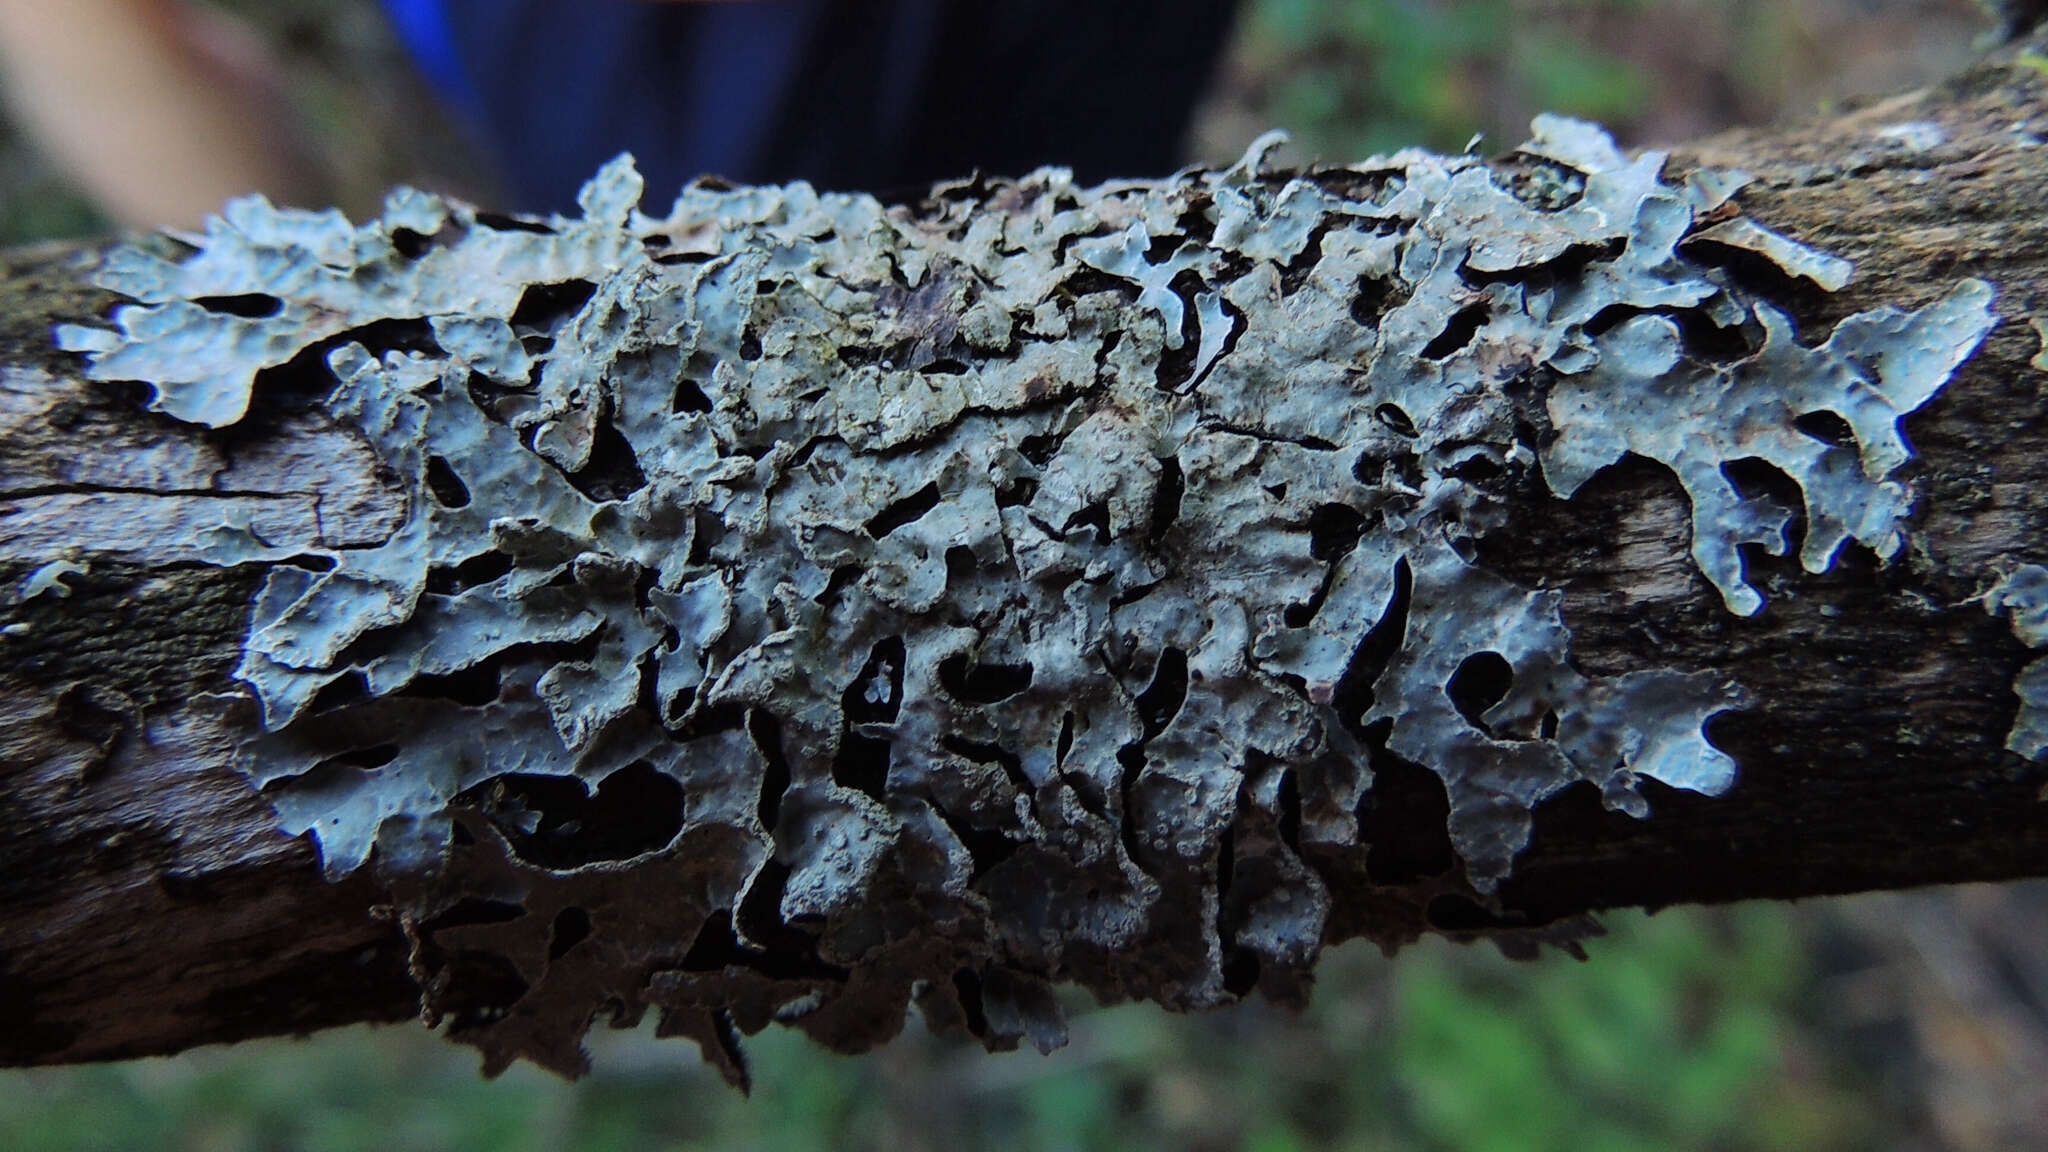 Image of Hammered shield lichen